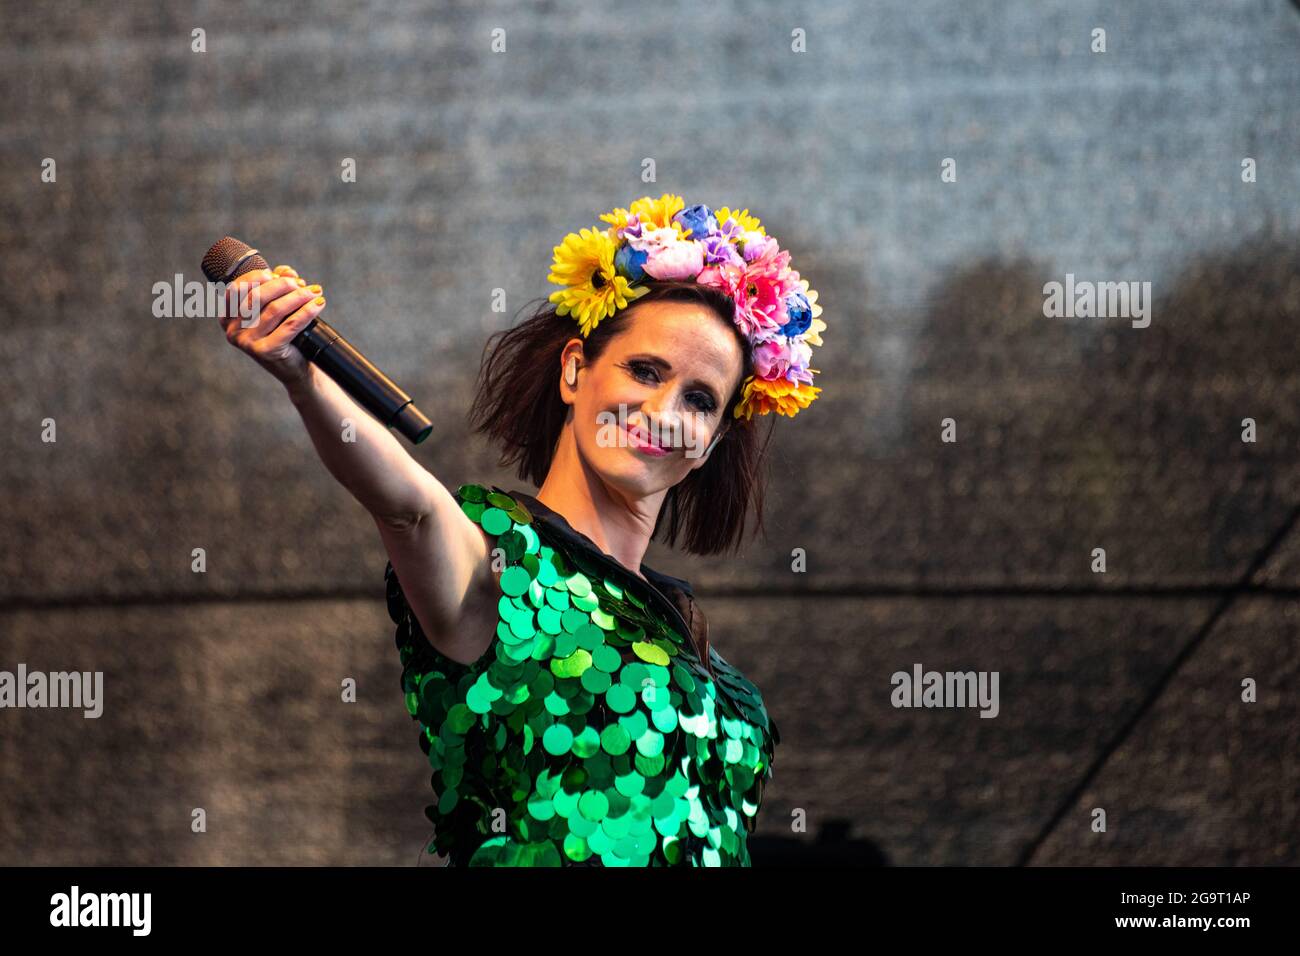 Maija Vilkkumaa on stage at Allas Live outdoor concert in Helsinki, Finland Stock Photo